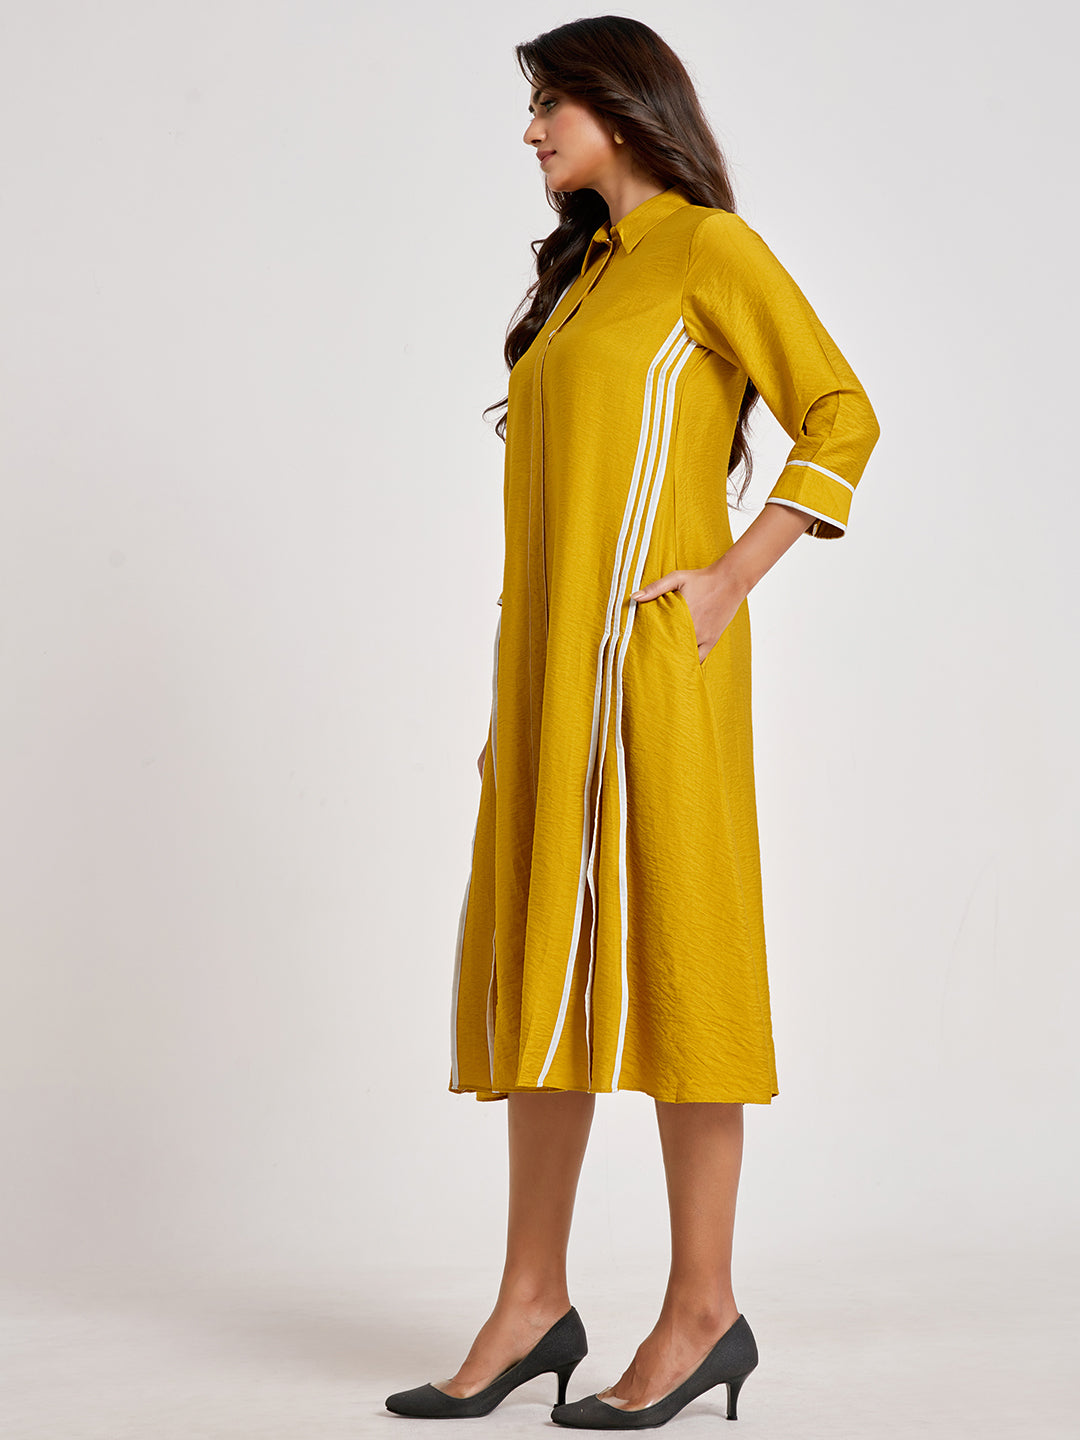 Mustard Shirt Style A-Line Dress - ARH1138